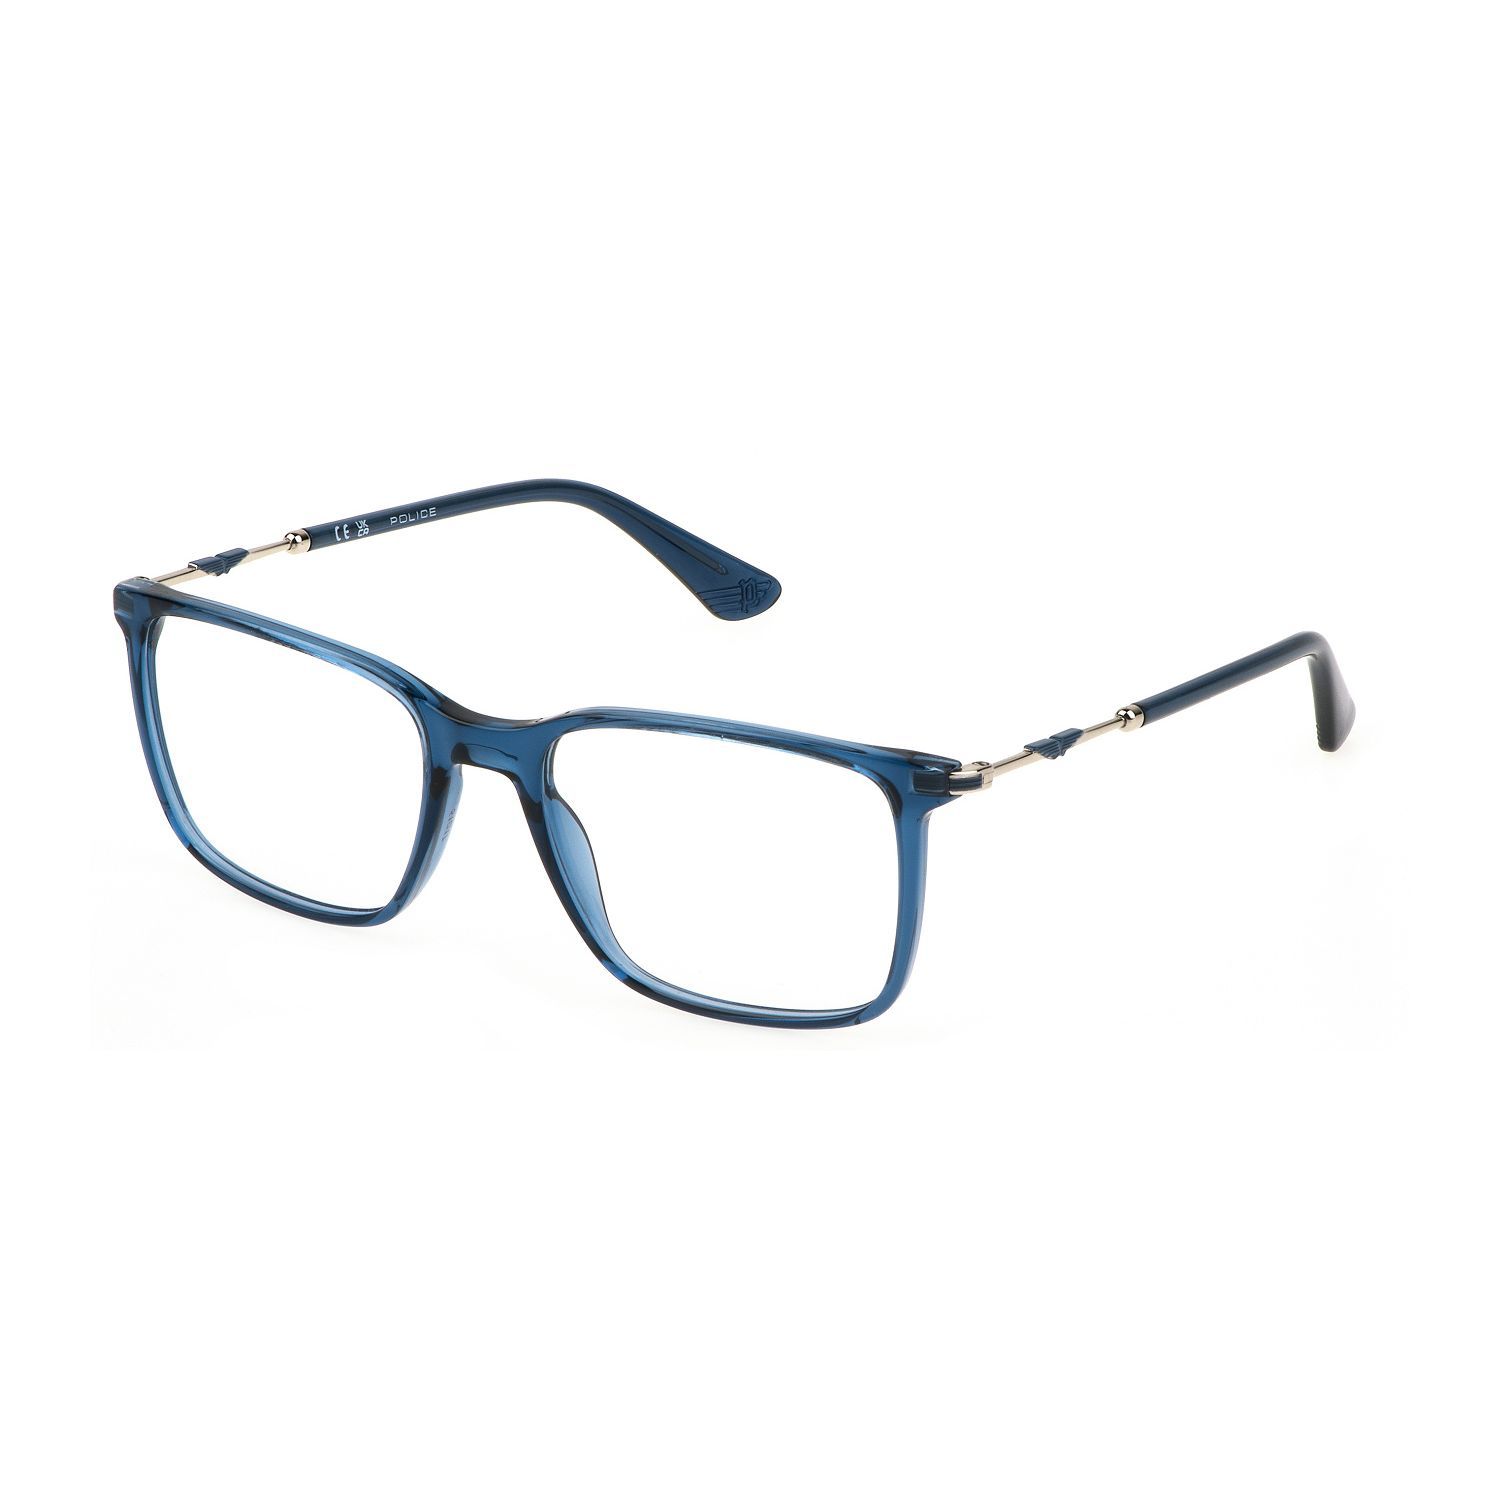 VK133 Square Eyeglasses 0AGQ - size 51